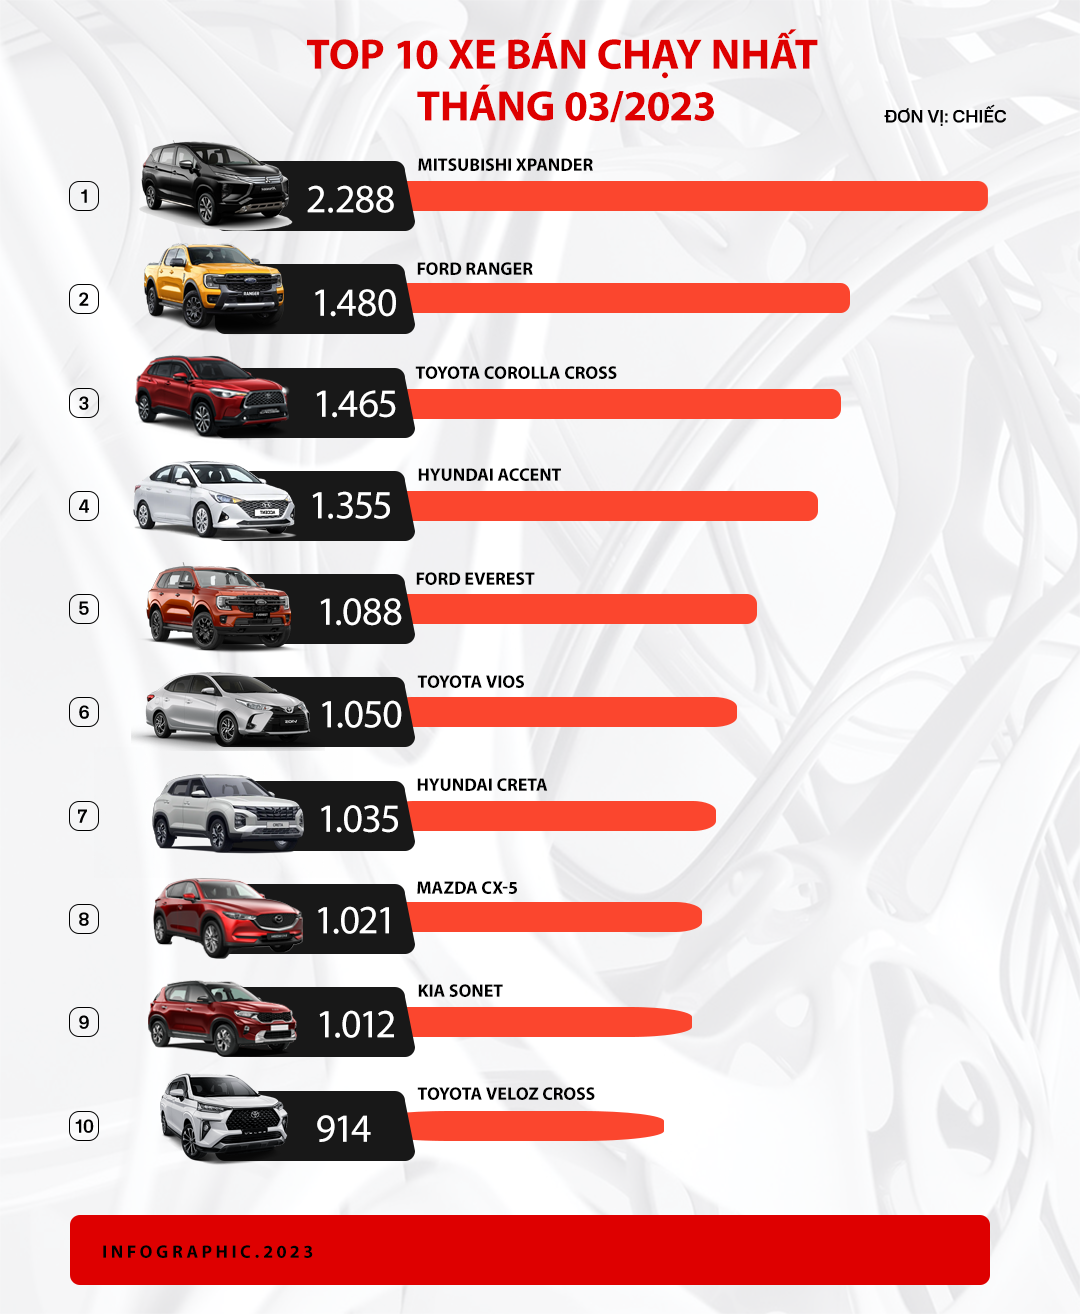 Cả thị trường tăng doanh số mạnh, Xpander là xe duy nhất bán trên 2.000 chiếc trong tháng 3/2023 - Ảnh 2.